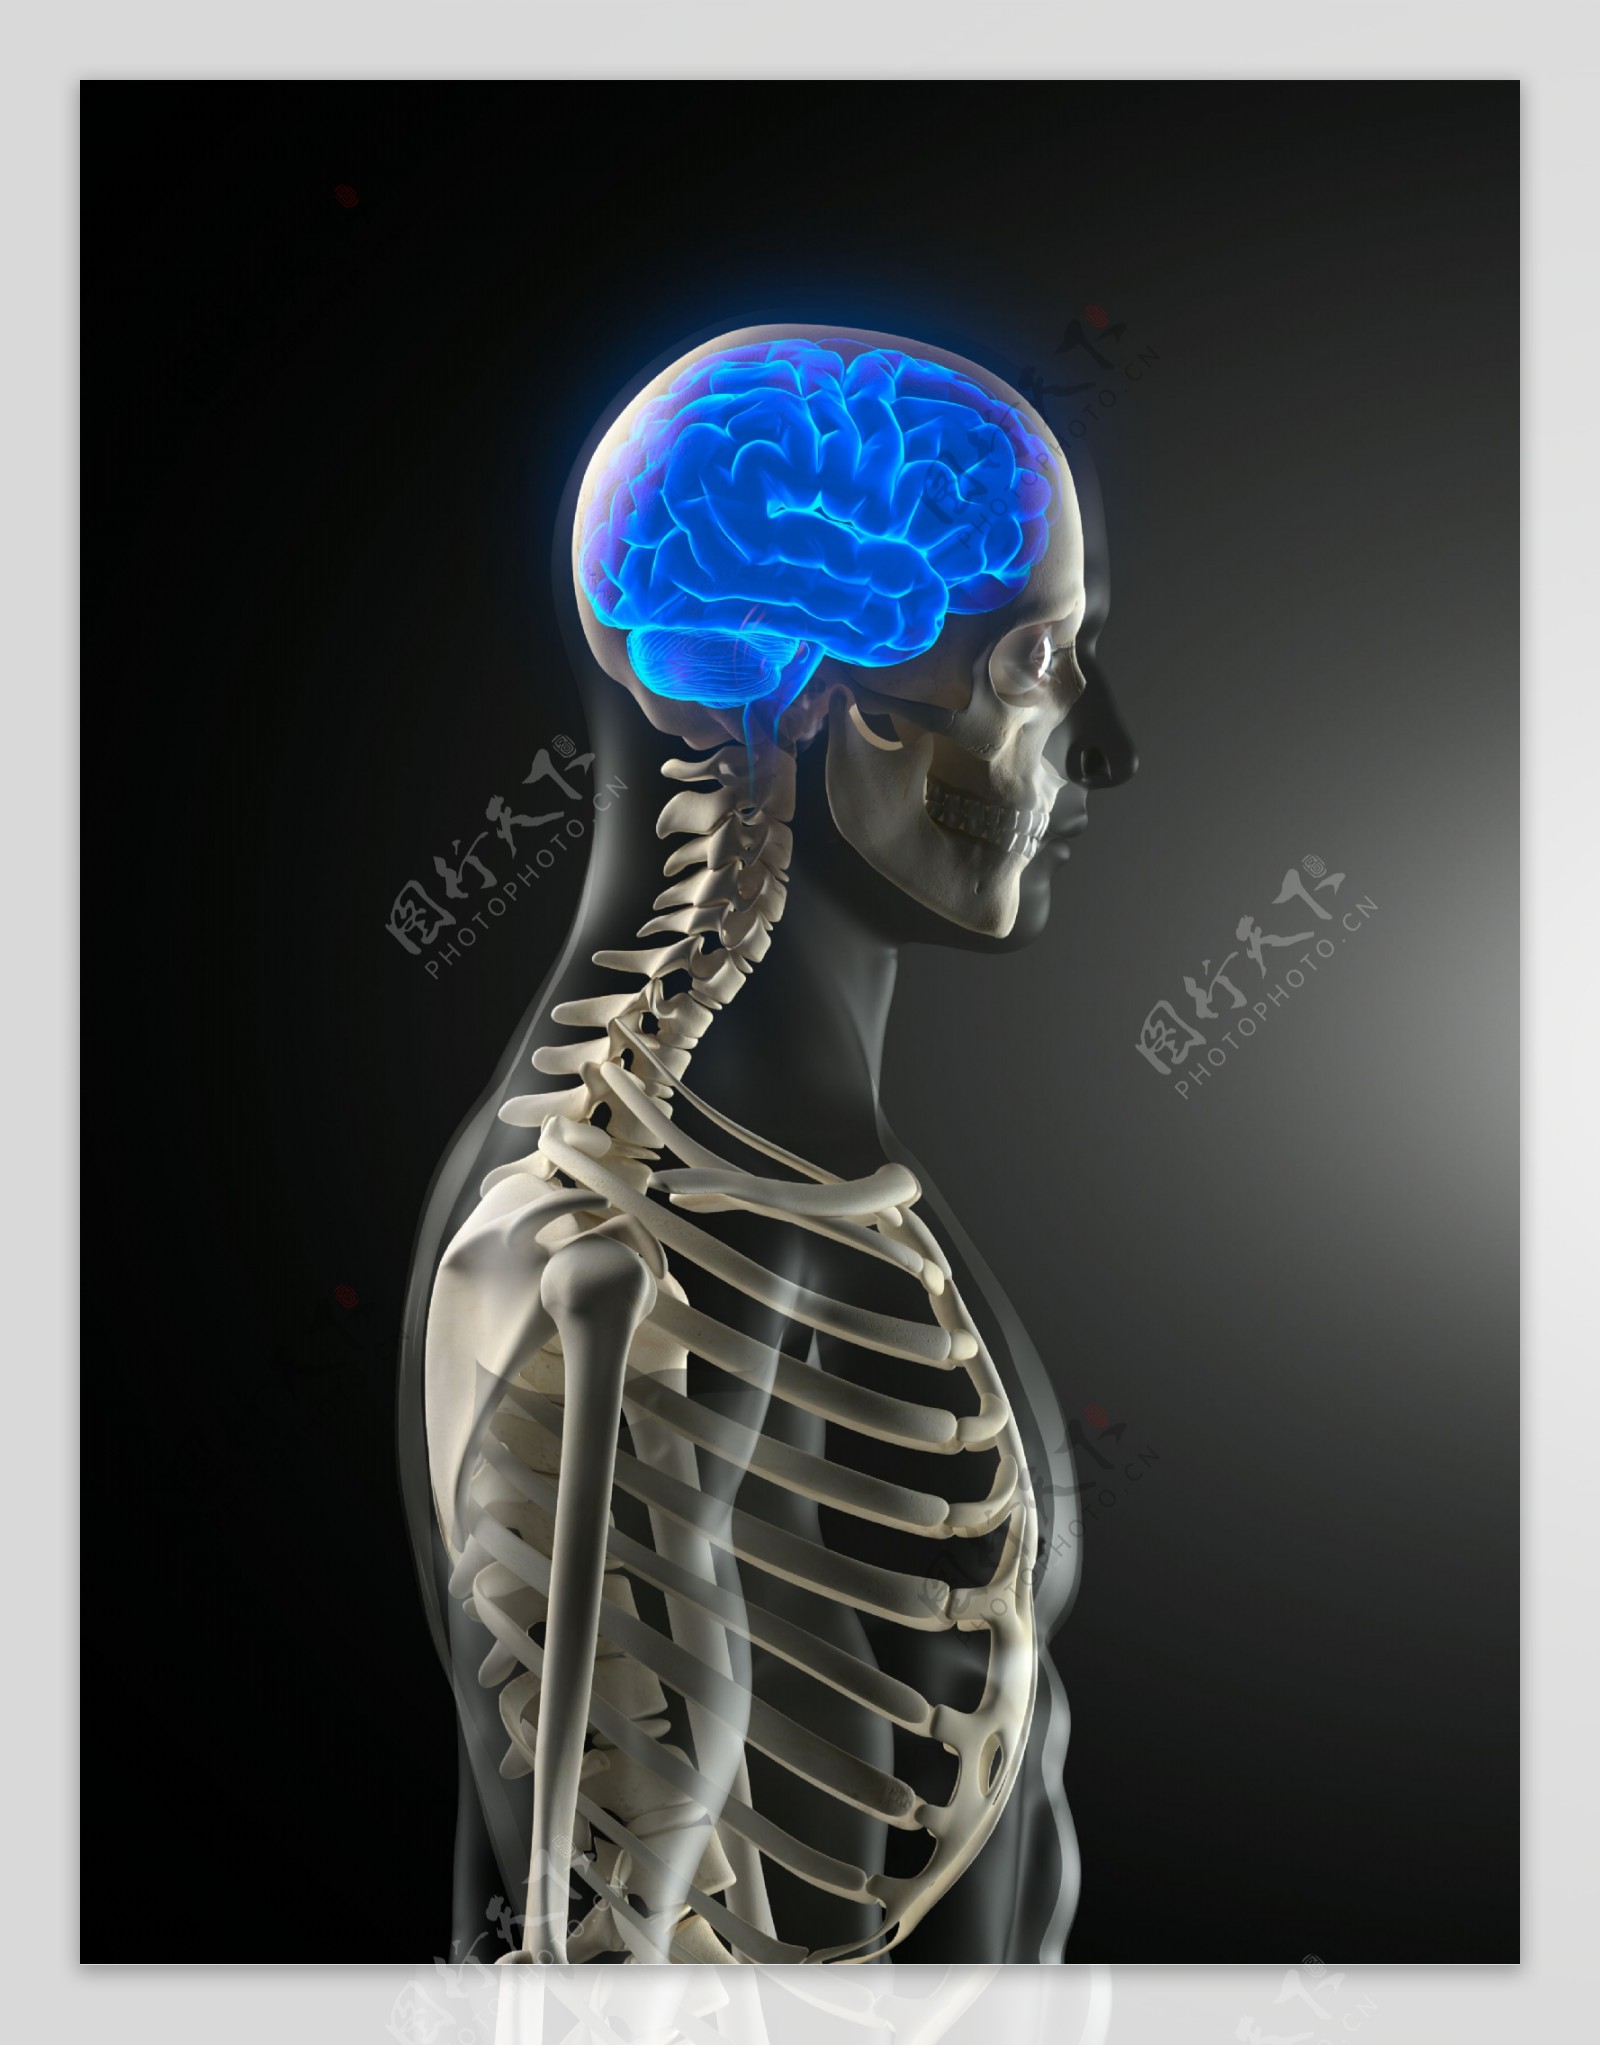 大脑器官与骨架图片